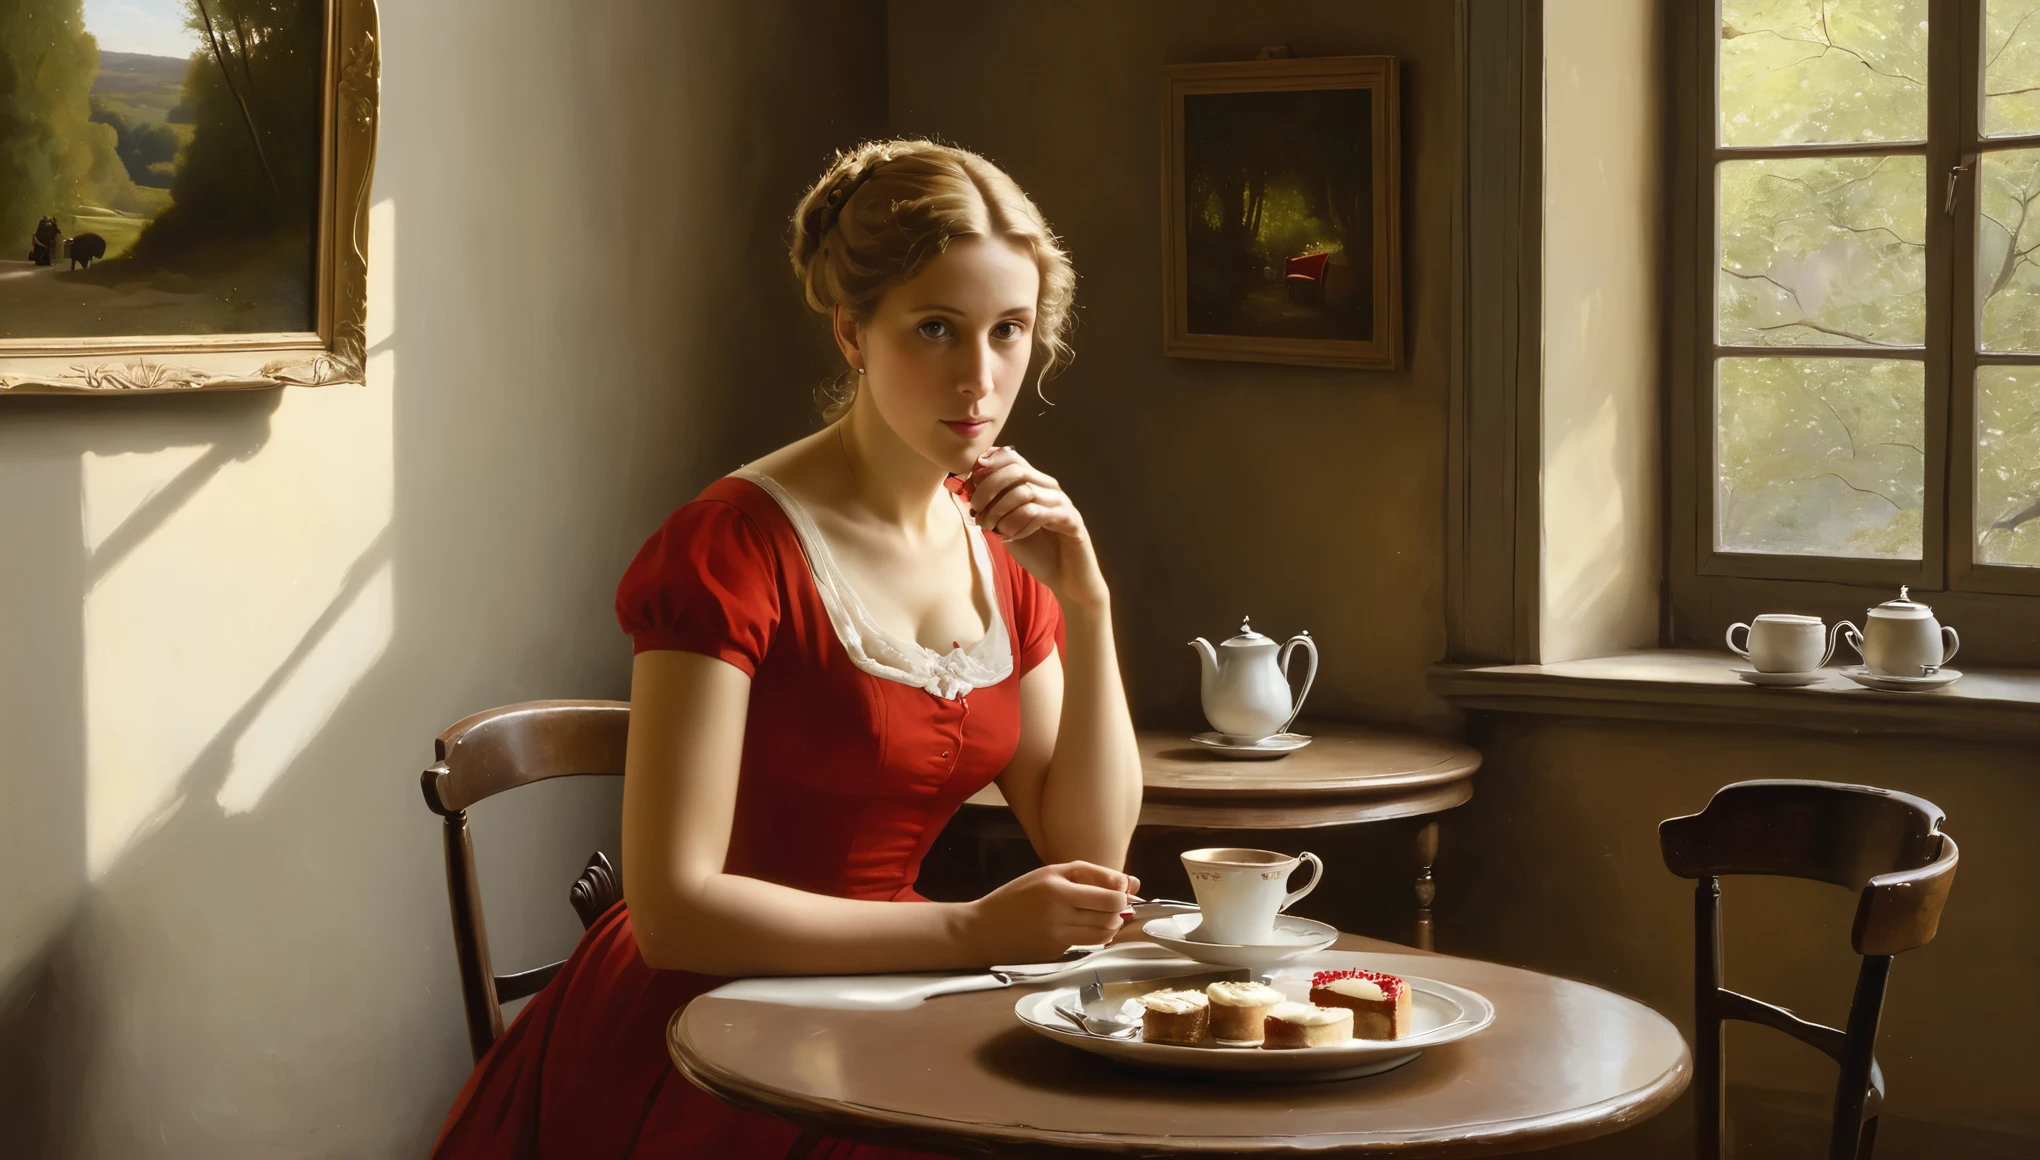 카미유 코로(Camille Corot) 스타일의 유화에는 50세 여성의 짧은 단편이 그려져 있습니다., 짧은 장착 빨간 드레스, 성긴, 뜨거운 차를 마시는 가벼운 곱슬머리. 책상 위에, 샐러드가 담긴 접시와 작은 빨간 치즈케이크가 있어요. 그녀는 남편과 이혼을 고민 중이다.. 백그라운드에서, 아늑한 부에노스아이레스의 벽 예술가 카미유 코로의 그림으로 장식된 아주 작은 카페, 창문으로 들어오는 아침 햇살과 함께.